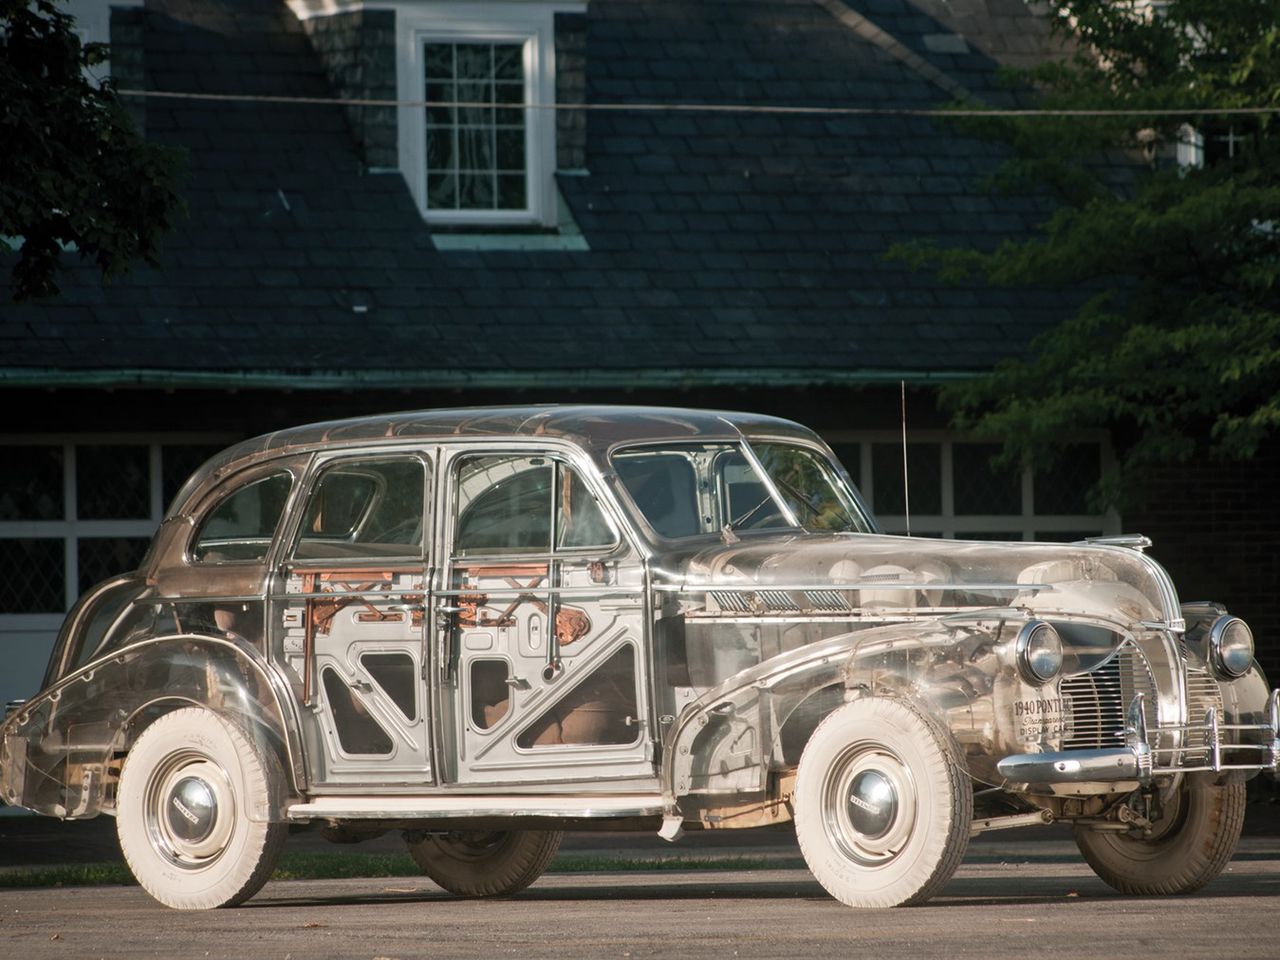 Samochód powstał w 1939 roku jako koncept mając promować szkło akrylowe, potoczne znane jako "pleksi". Choć logika podpowiada, że można nim zastąpić szyby w aucie, Amerykanie poszli o krok dalej i wykonali z tego materiału całe nadwozie Pontiaca Deluxe Six.